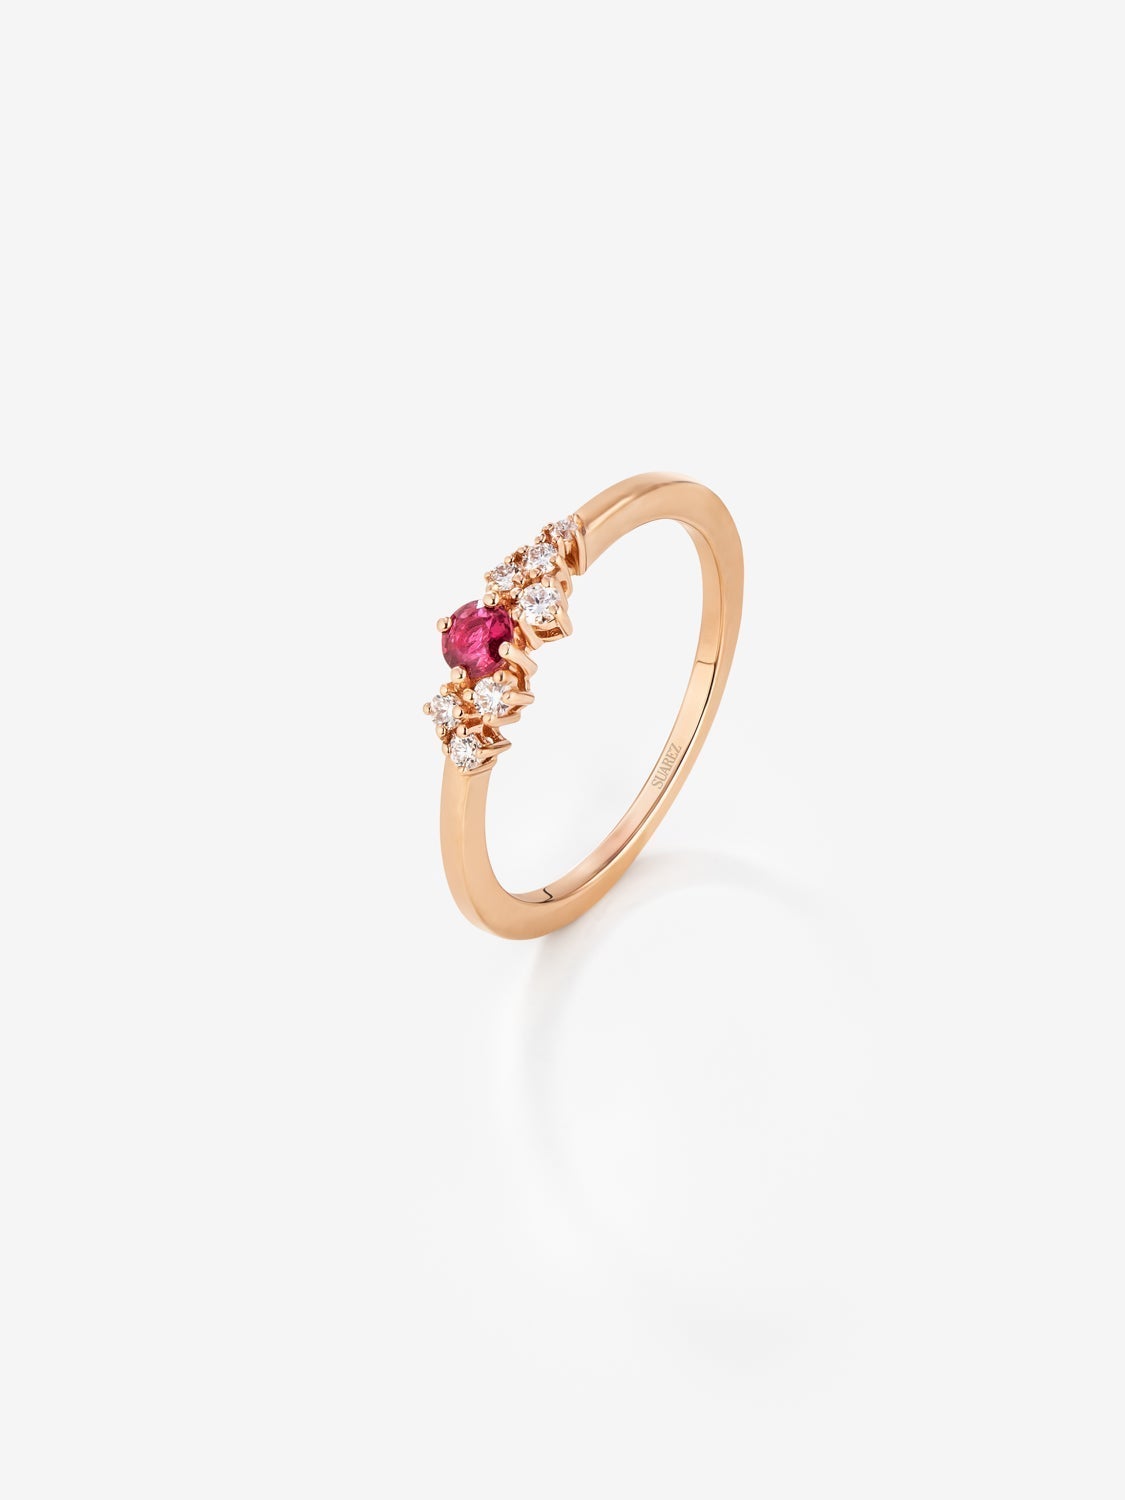 Anillo de oro rosa de 18K con rubí en talla brillante de 0,21 cts y 7 diamantes en talla brillante con un total de 0,1 cts